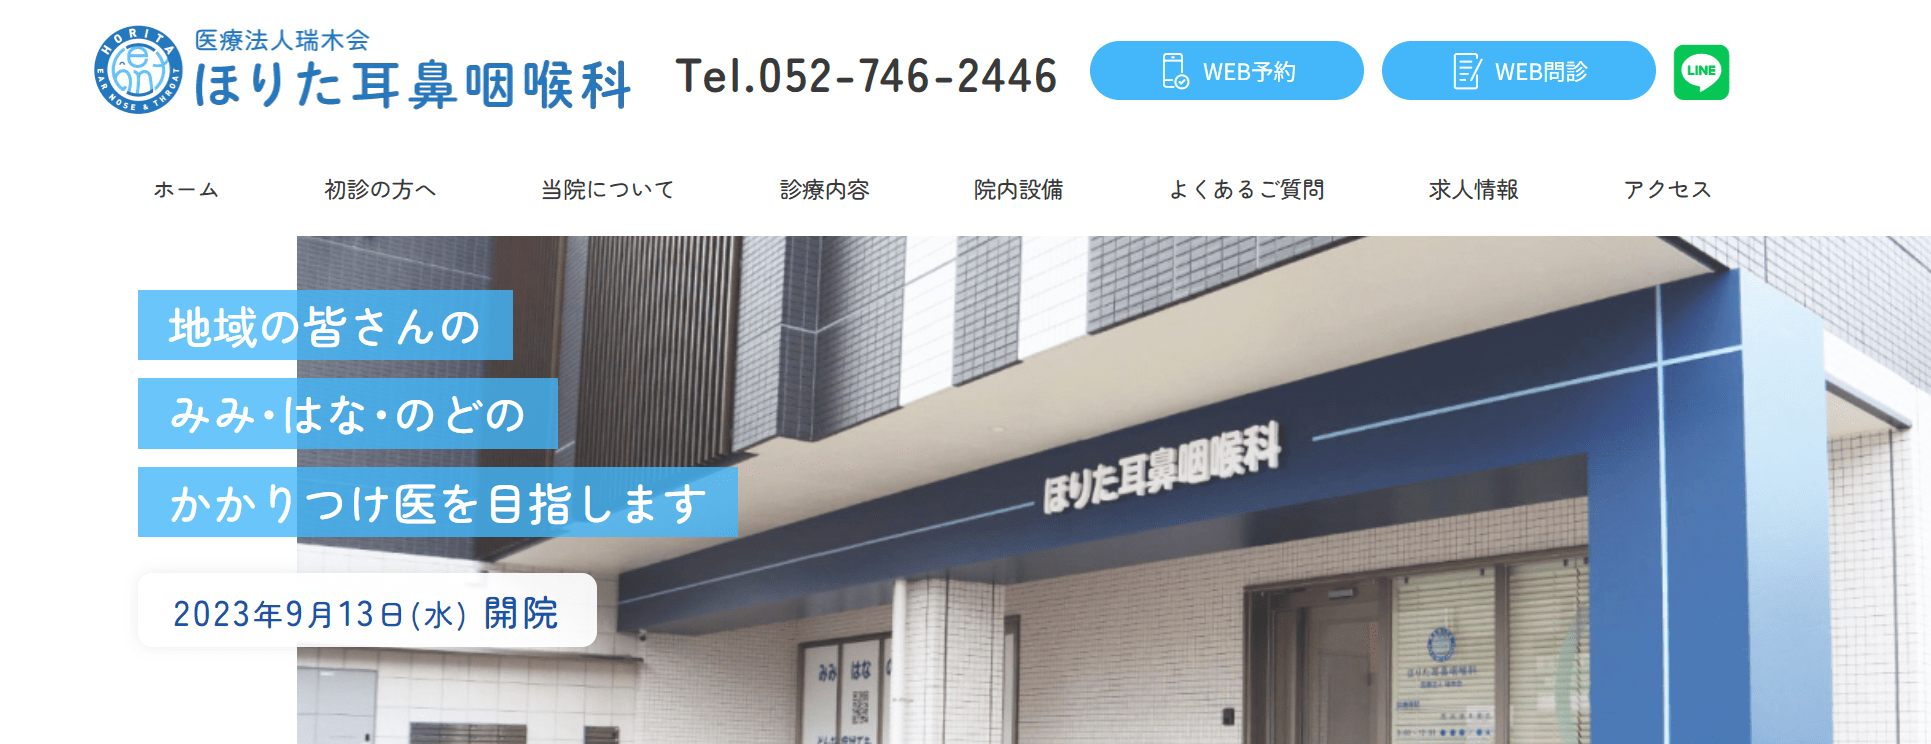 名古屋市で評判の耳鼻咽喉科クリニックおすすめ10選 ほりた耳鼻咽喉科